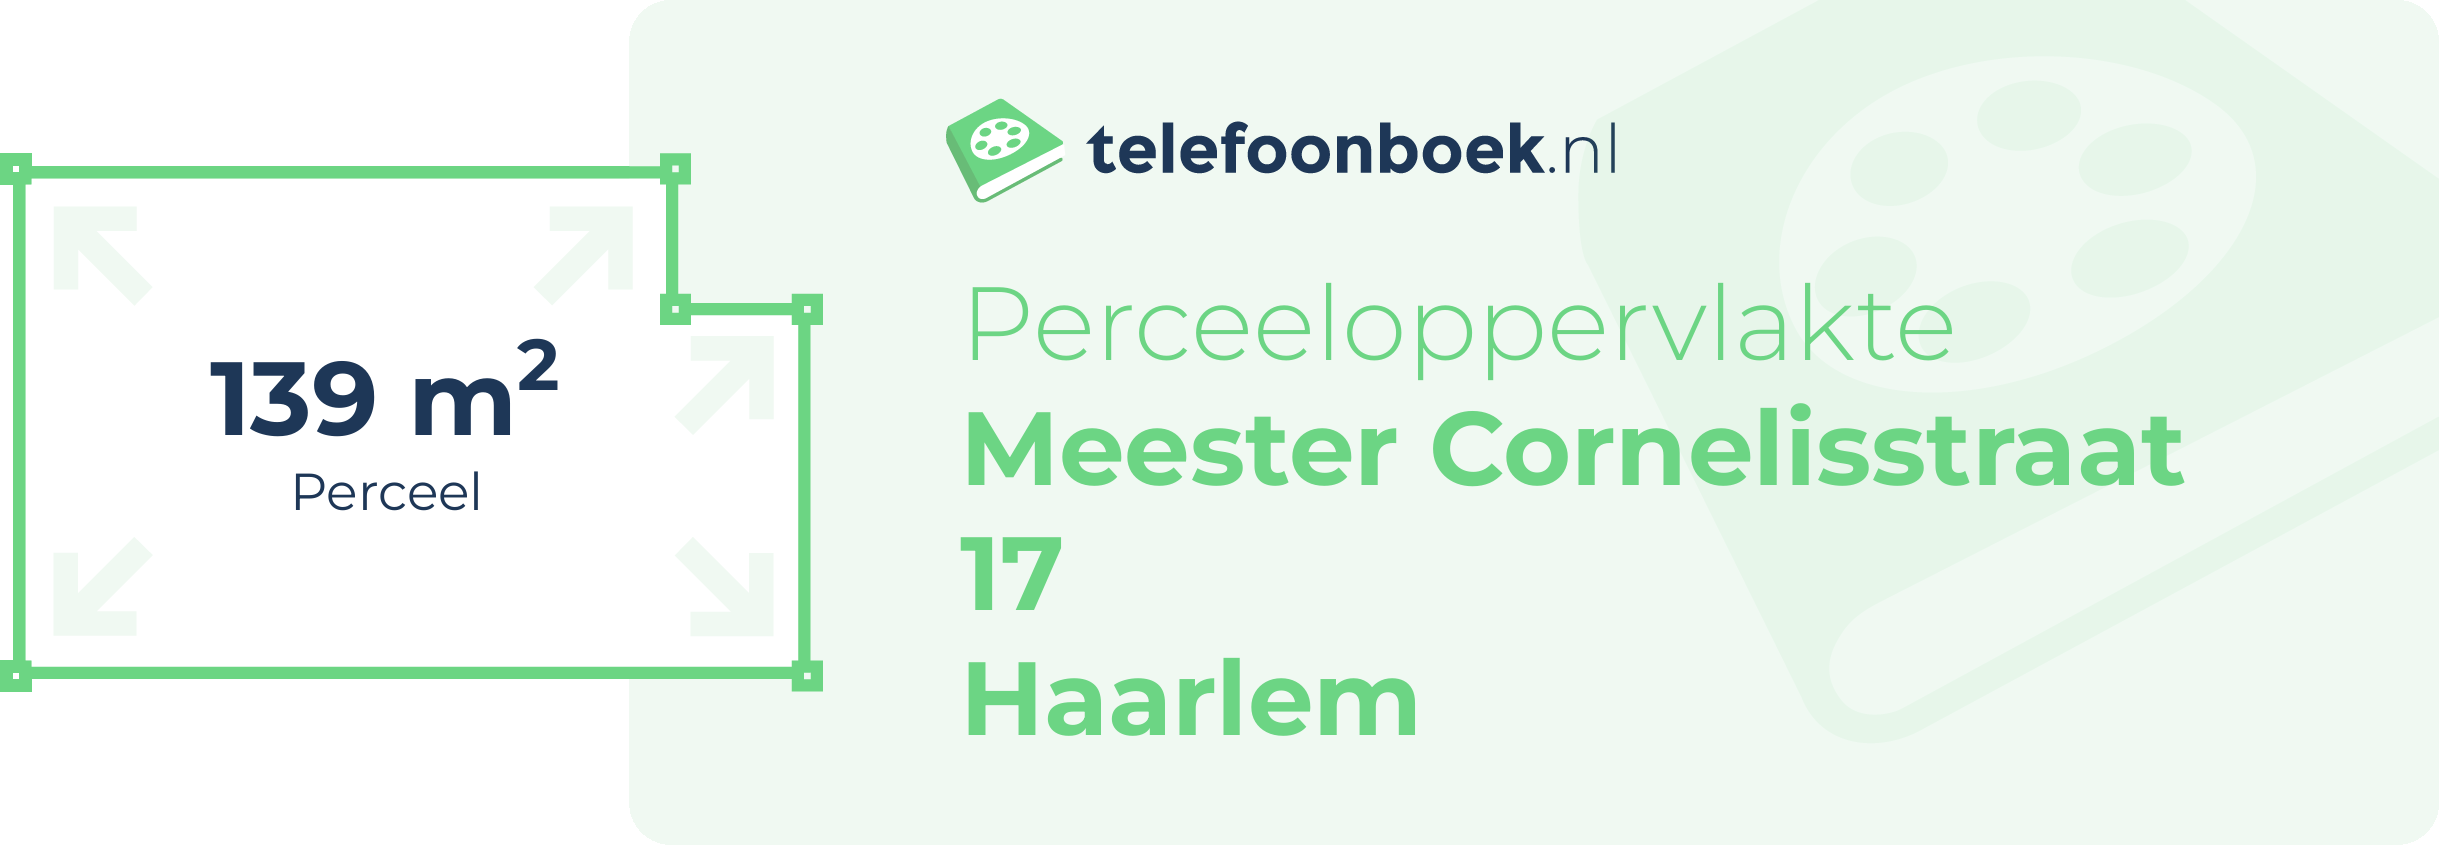 Perceeloppervlakte Meester Cornelisstraat 17 Haarlem